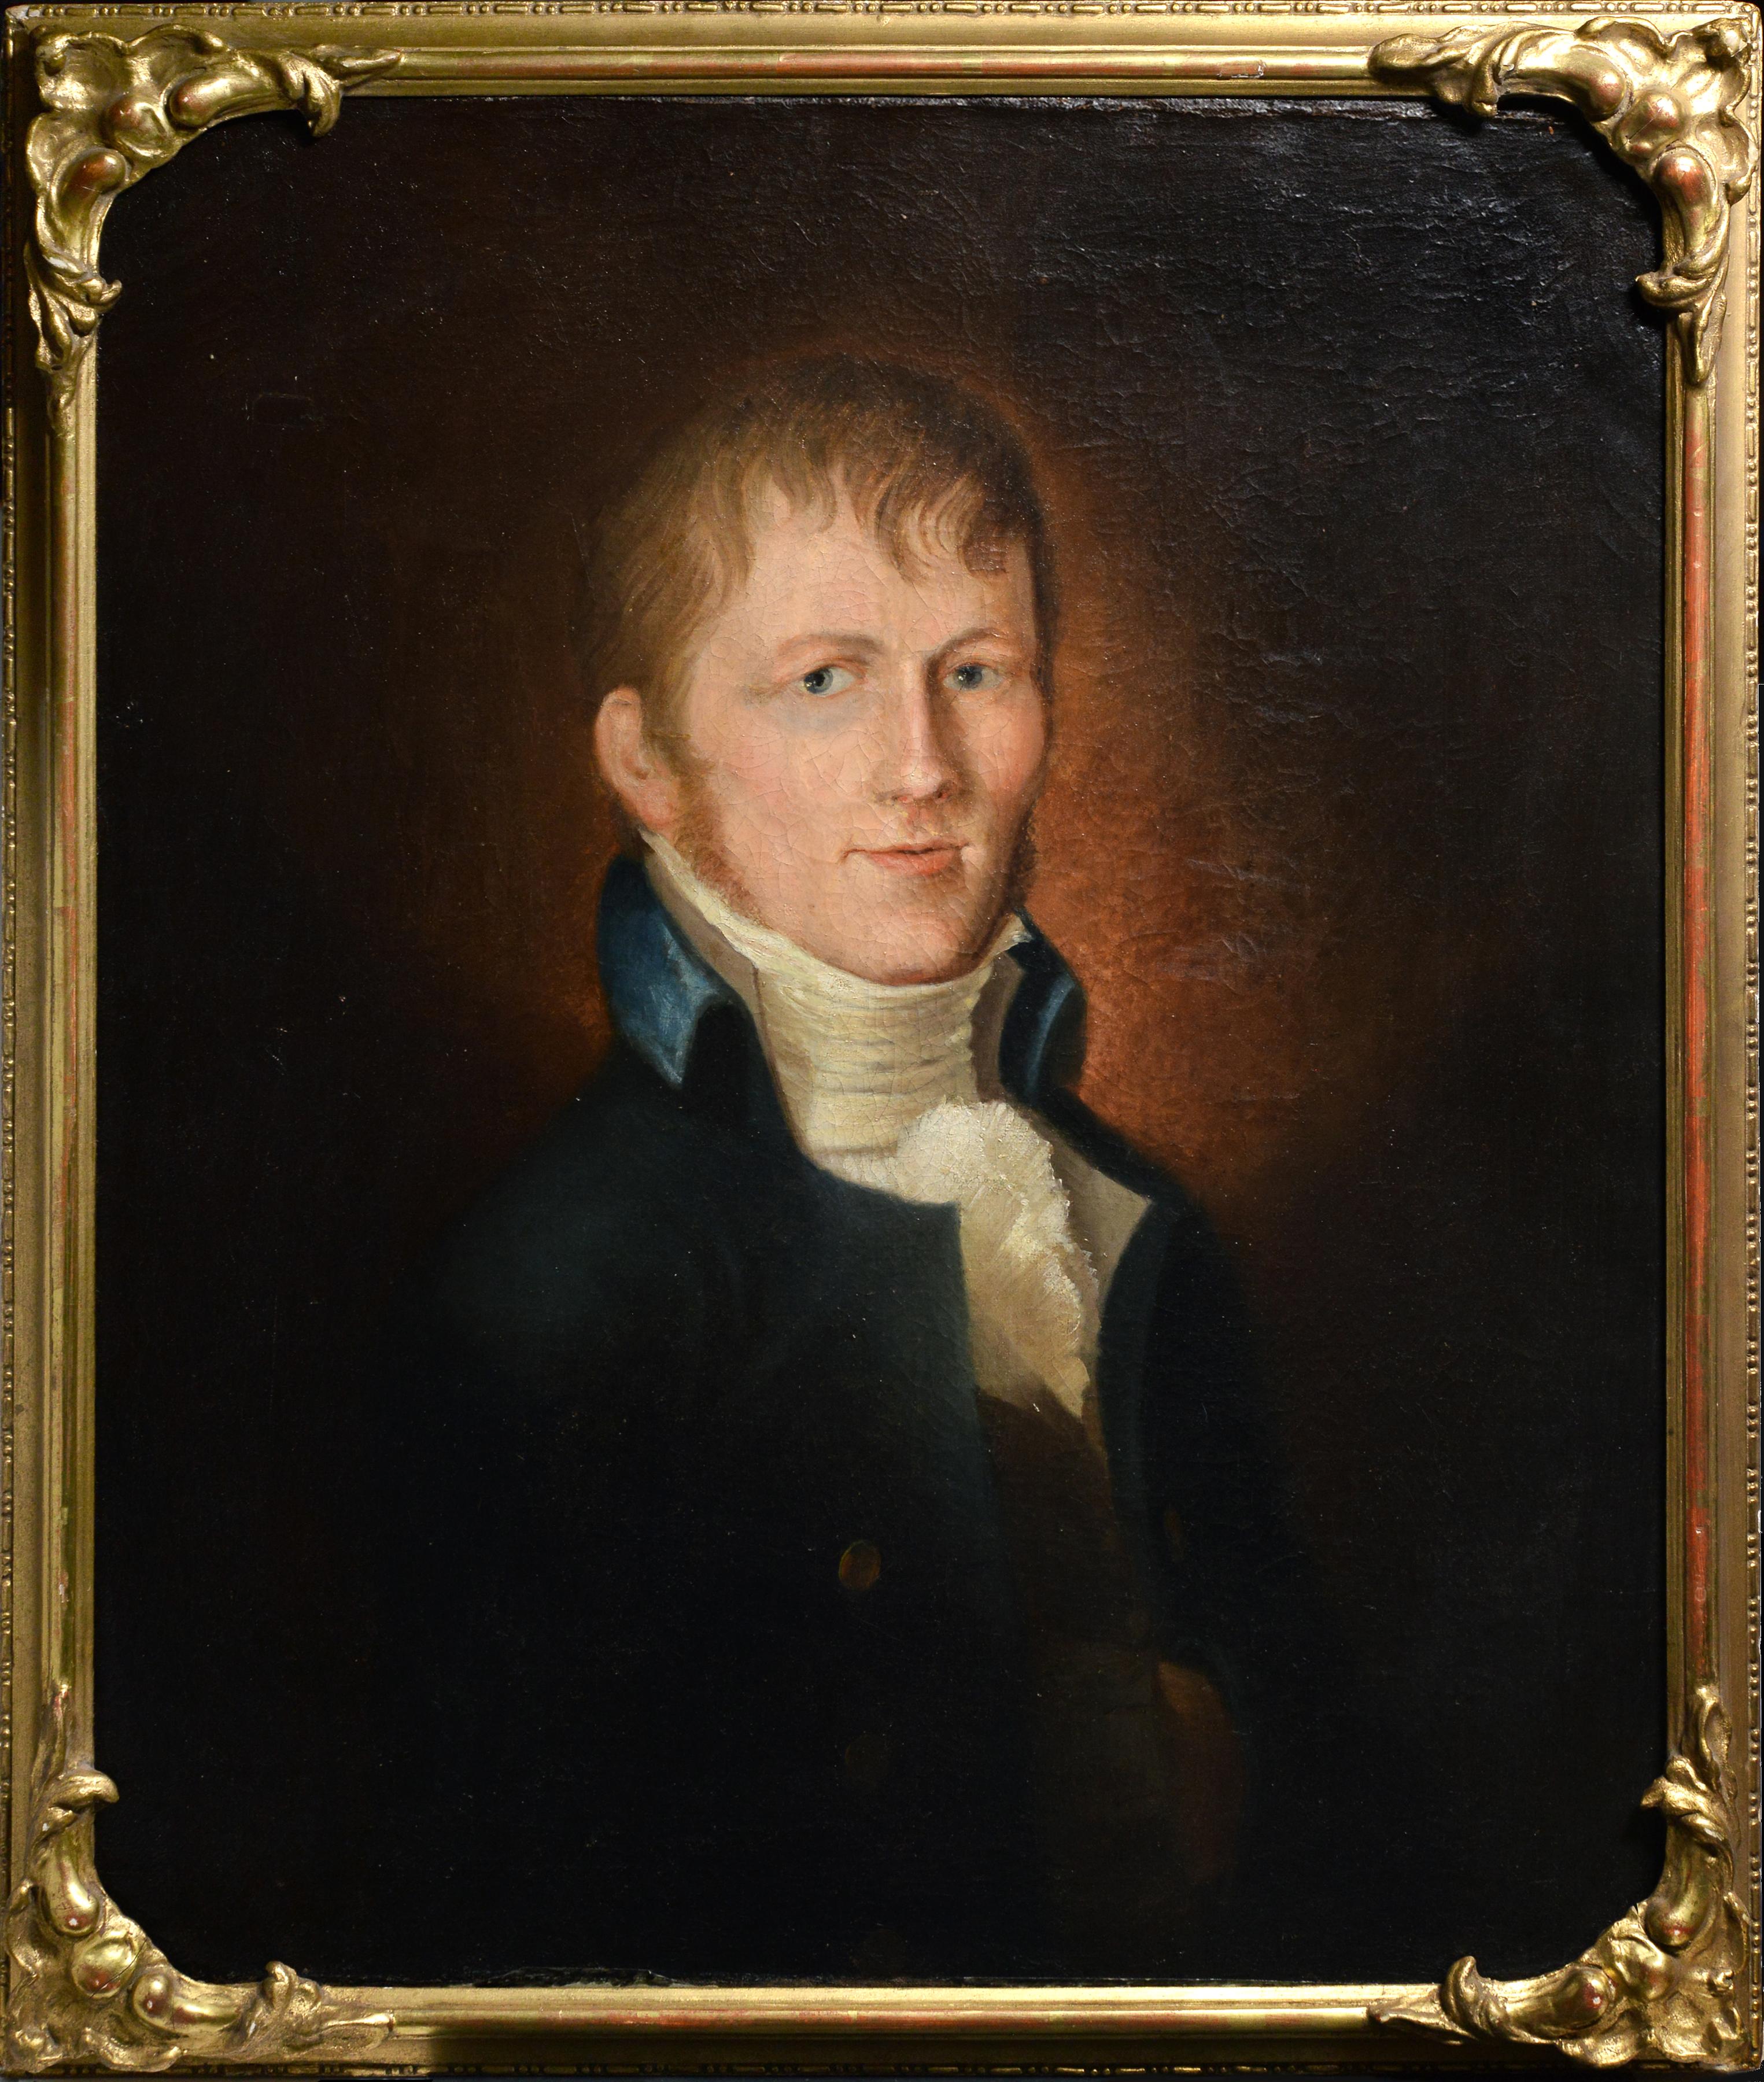 Samuel Finley Breese Morse Portrait Painting – Porträt eines jungen Gentleman von dem amerikanischen Samuel Morse, Erfinder des Telegraph Code 19C